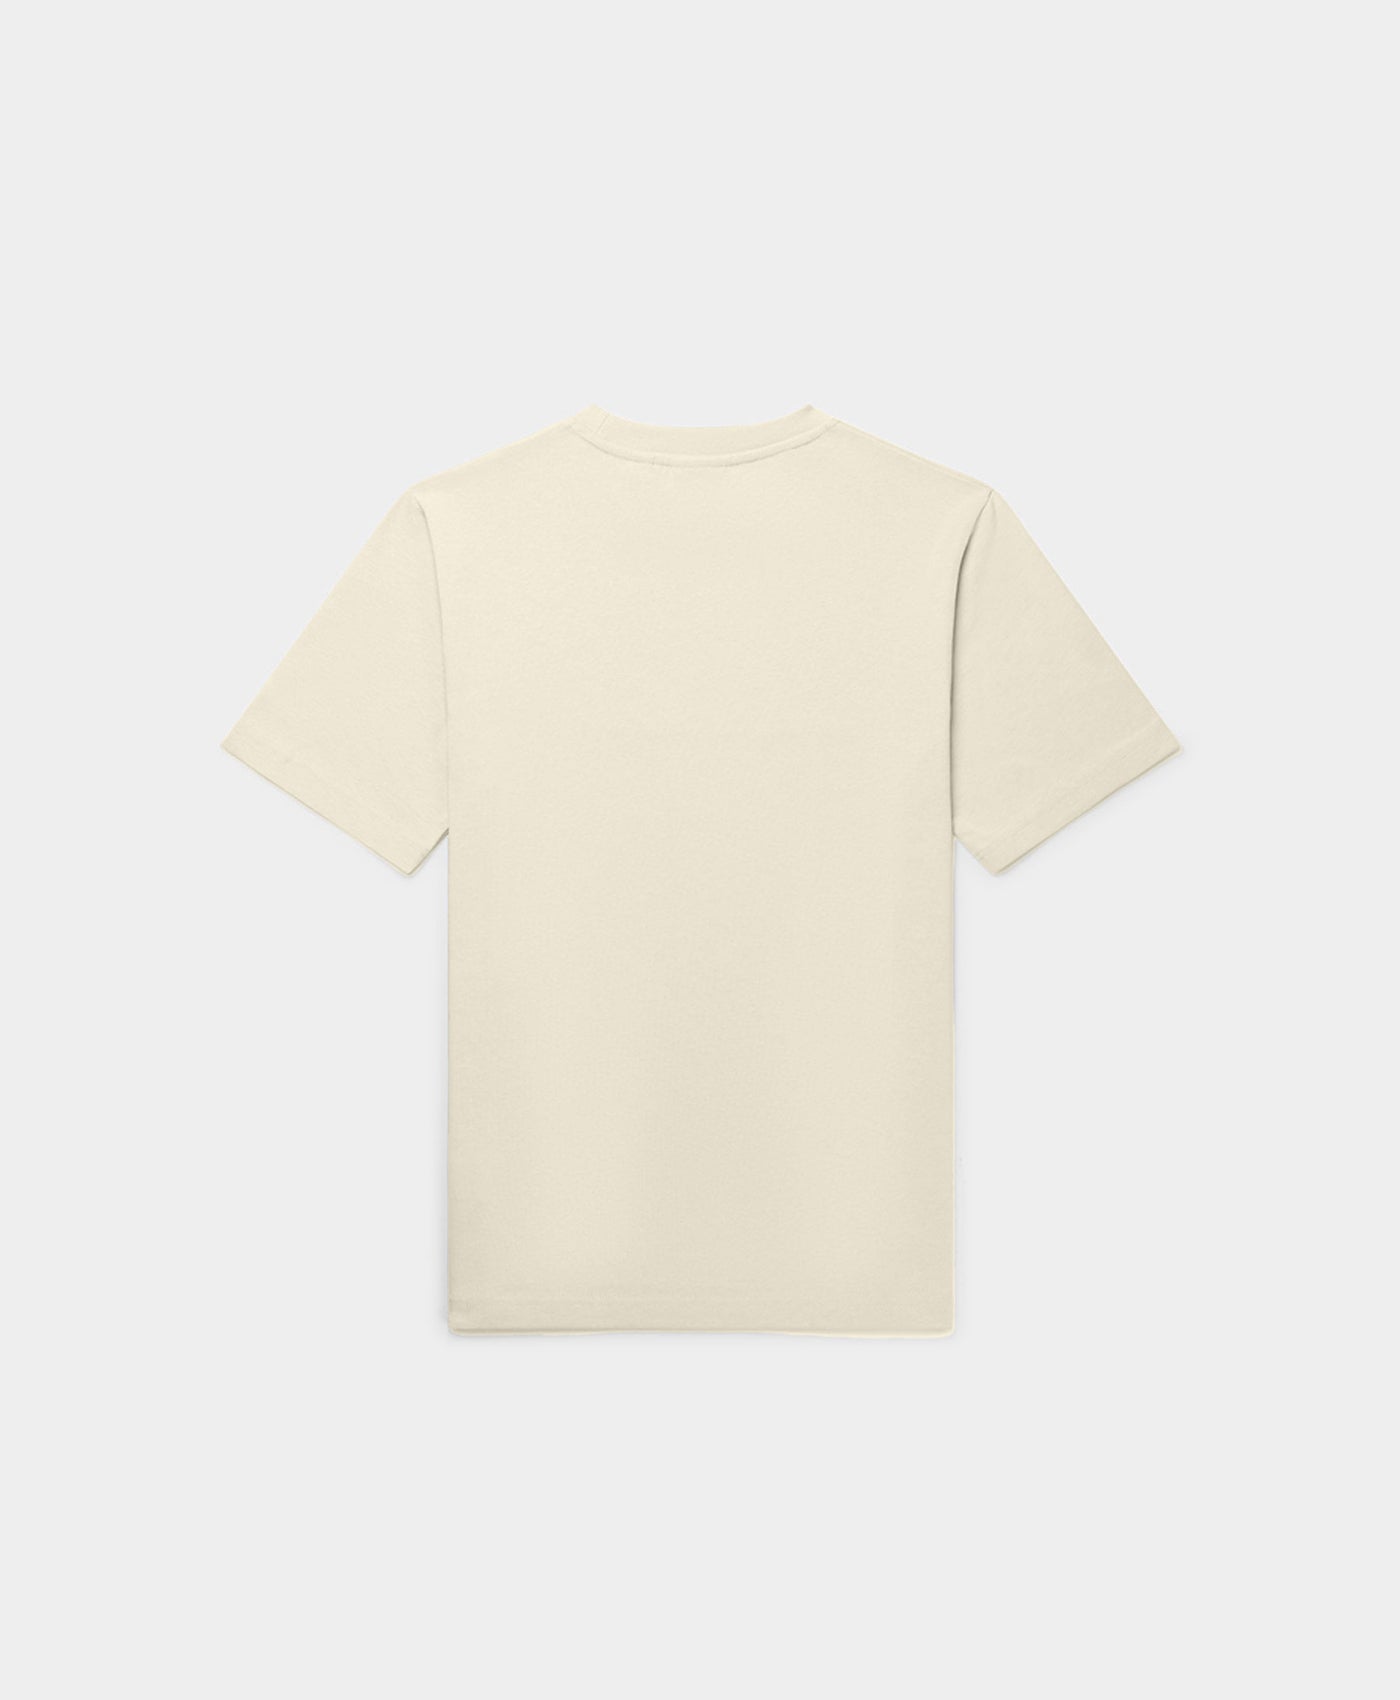 DP - Overcast Beige Alias T-Shirt - Packshot - Rear